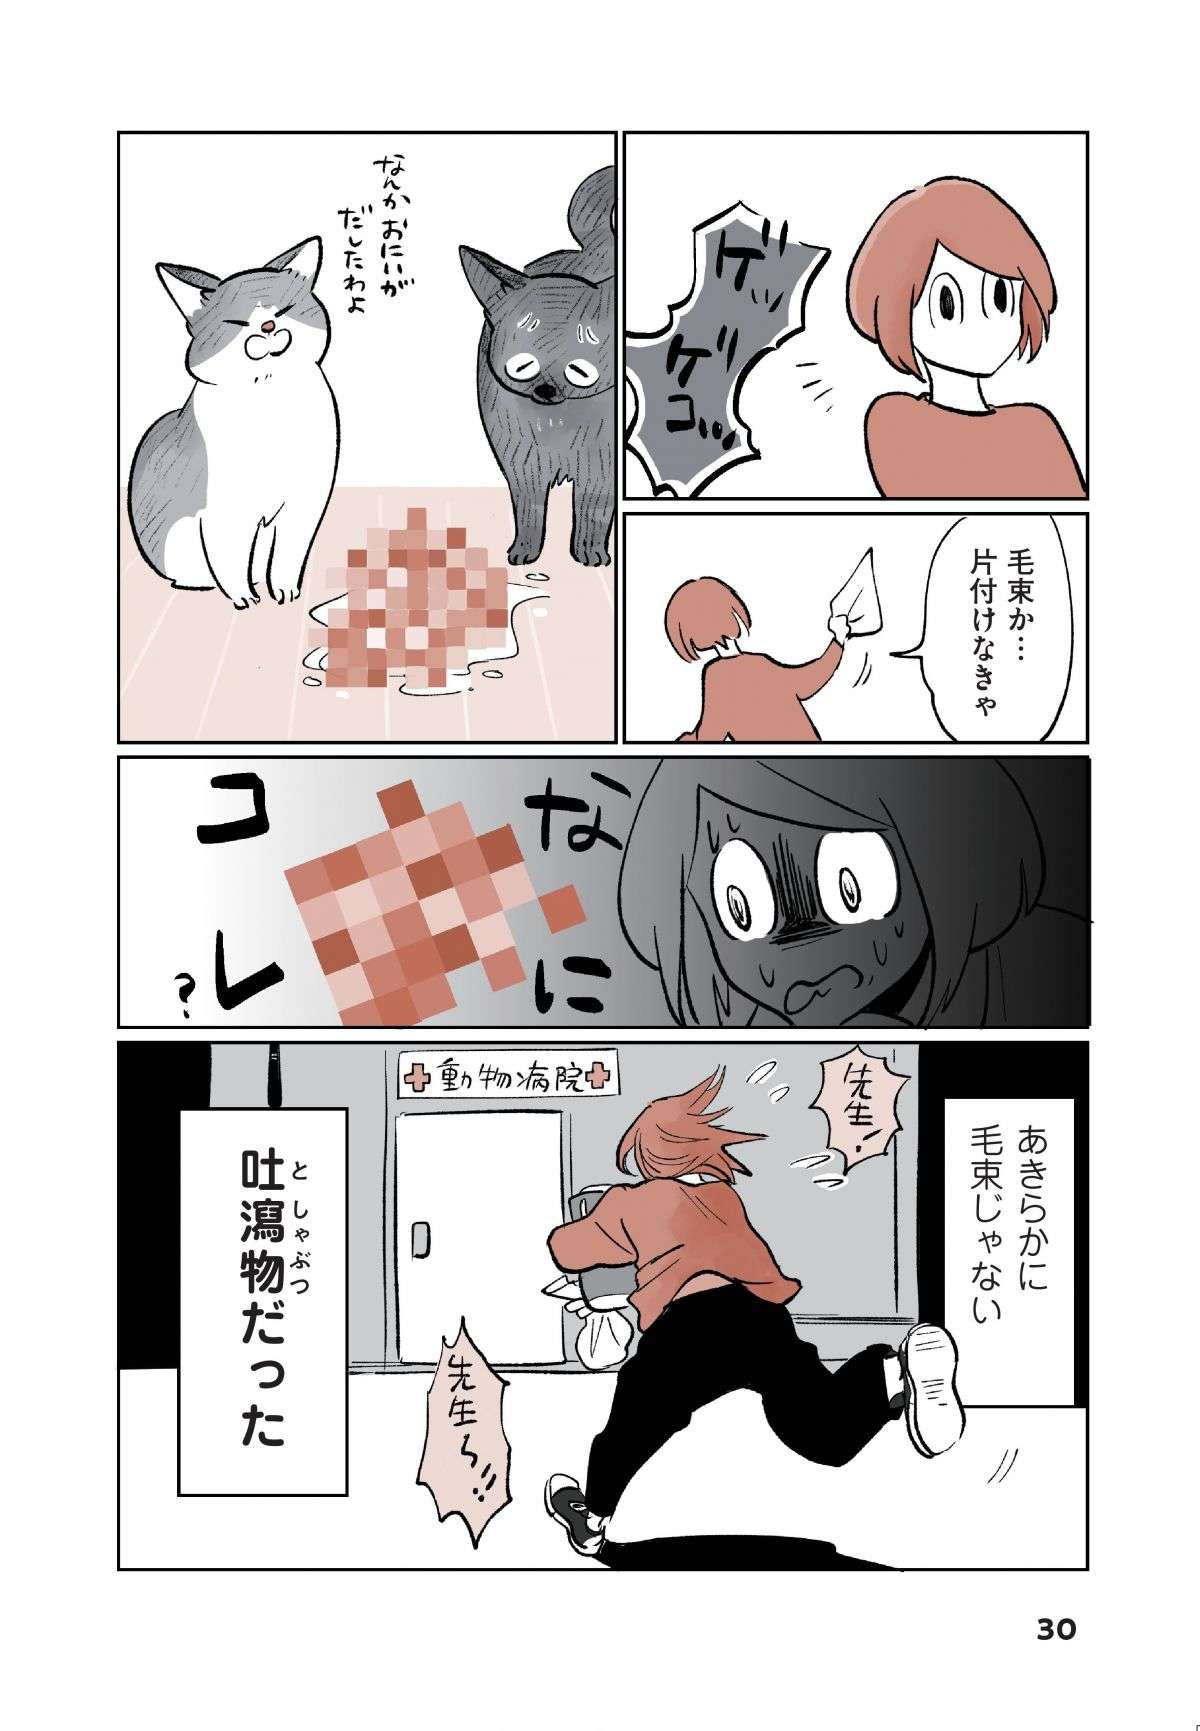 「なんか吐いた！」猫飼い初心者が焦って病院に駆け込むと、先生は「意外な反応」で...／こねこのドレイ koneko_dorei3-5.jpg